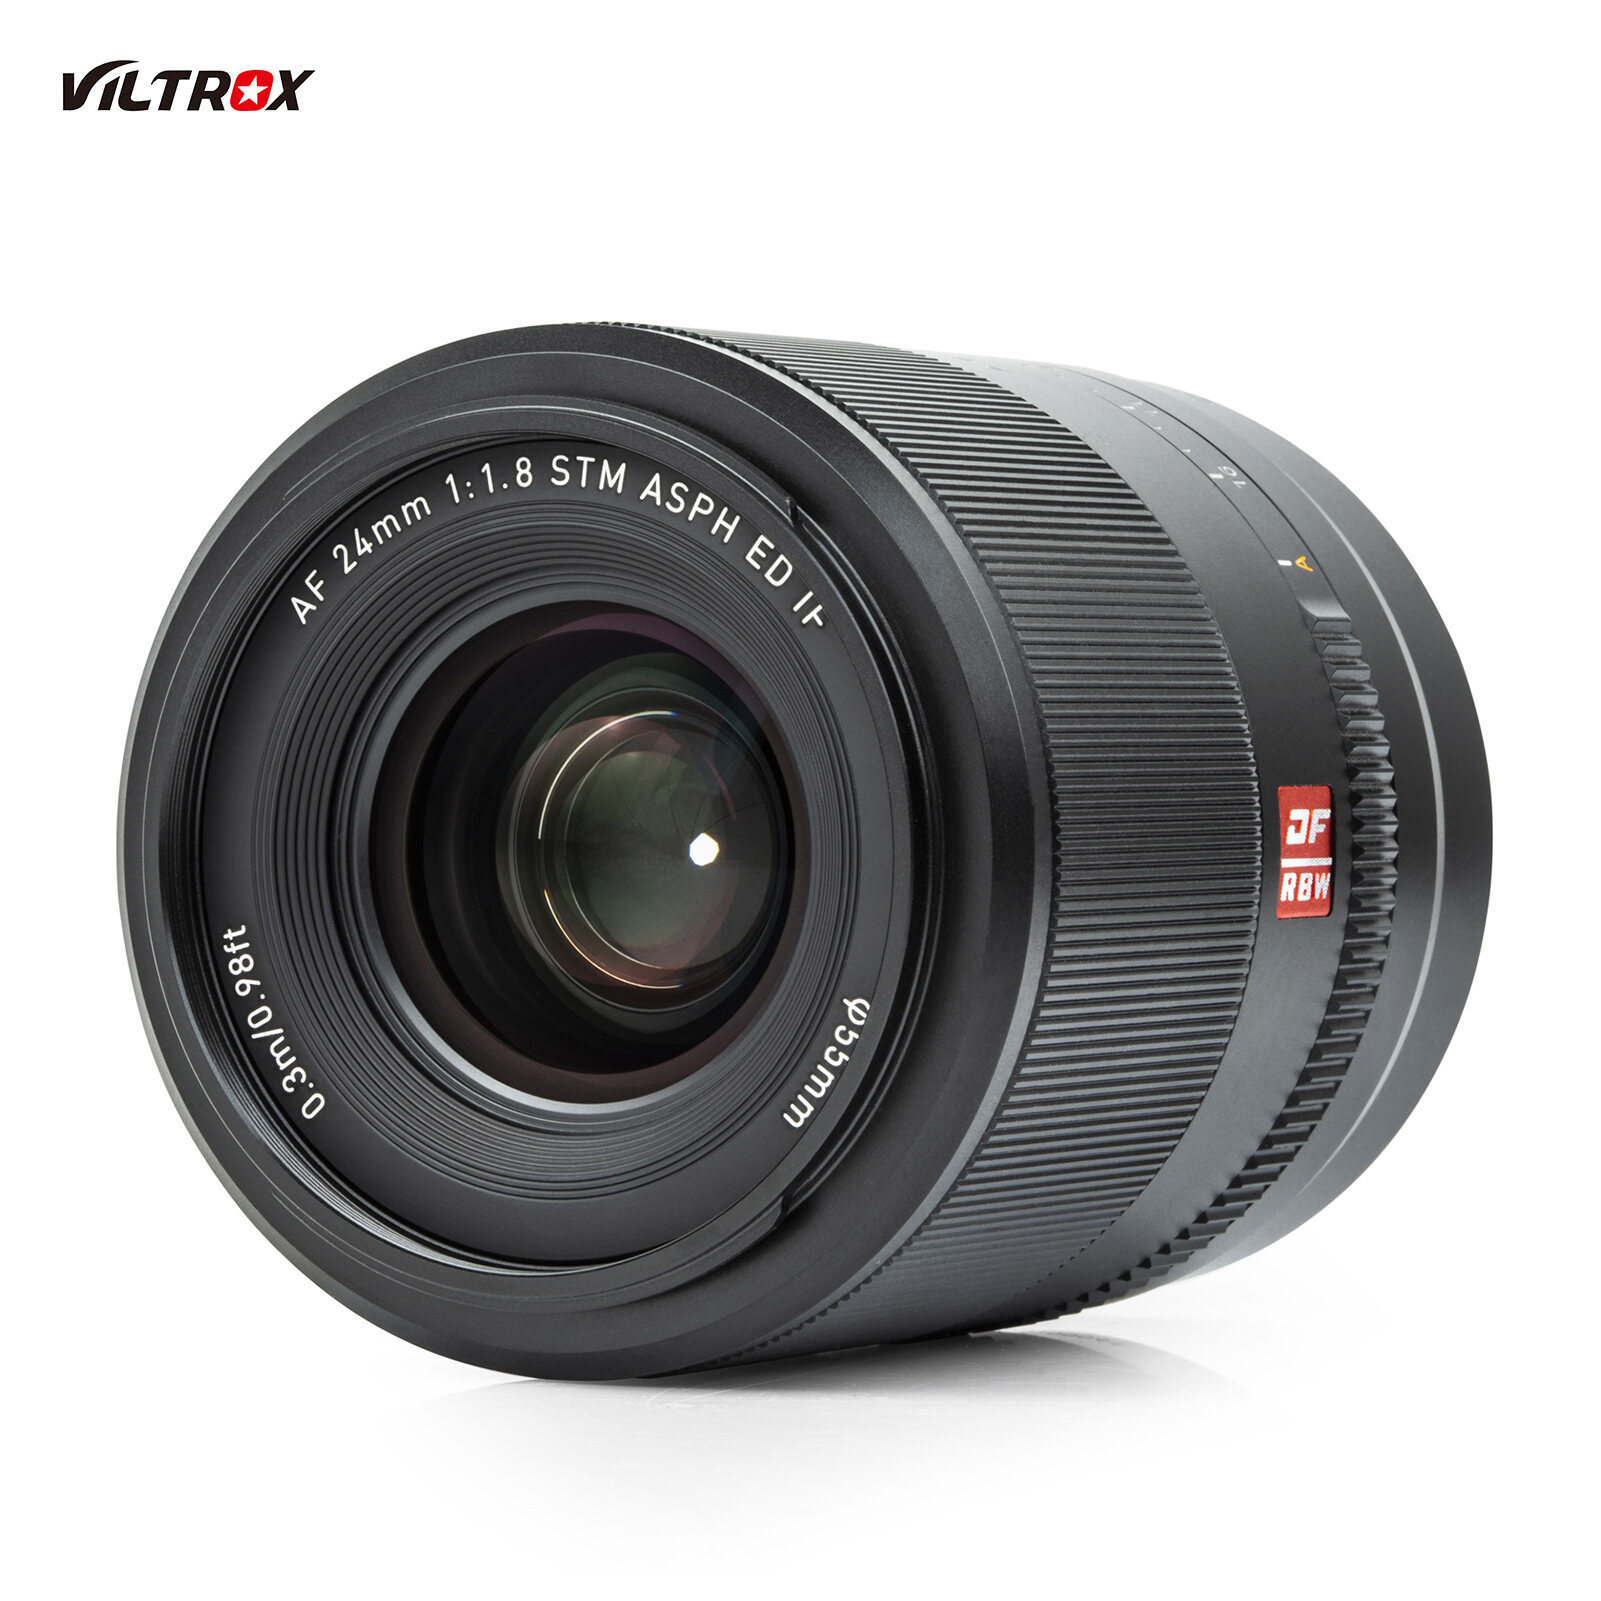 Viltrox Nikon Z ราคาถูก ซื้อออนไลน์ที่ - ก.ค. 2022 | Lazada.co.th